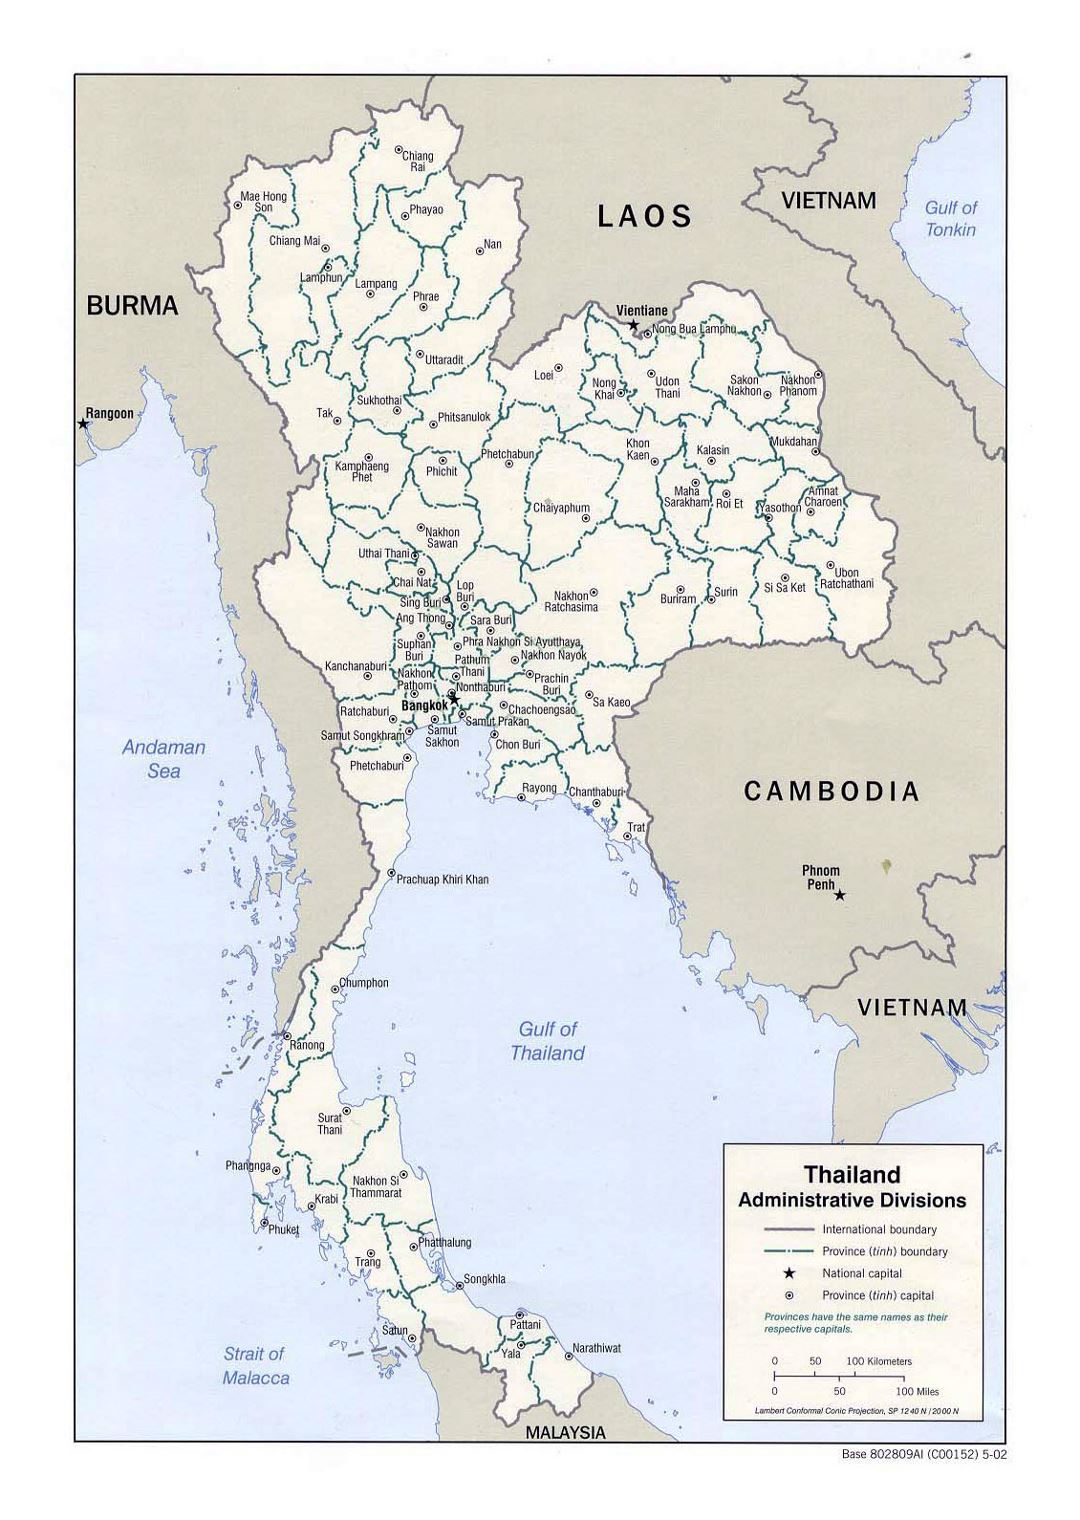 Detallado mapa de administrativas divisiones de Tailandia - 2002